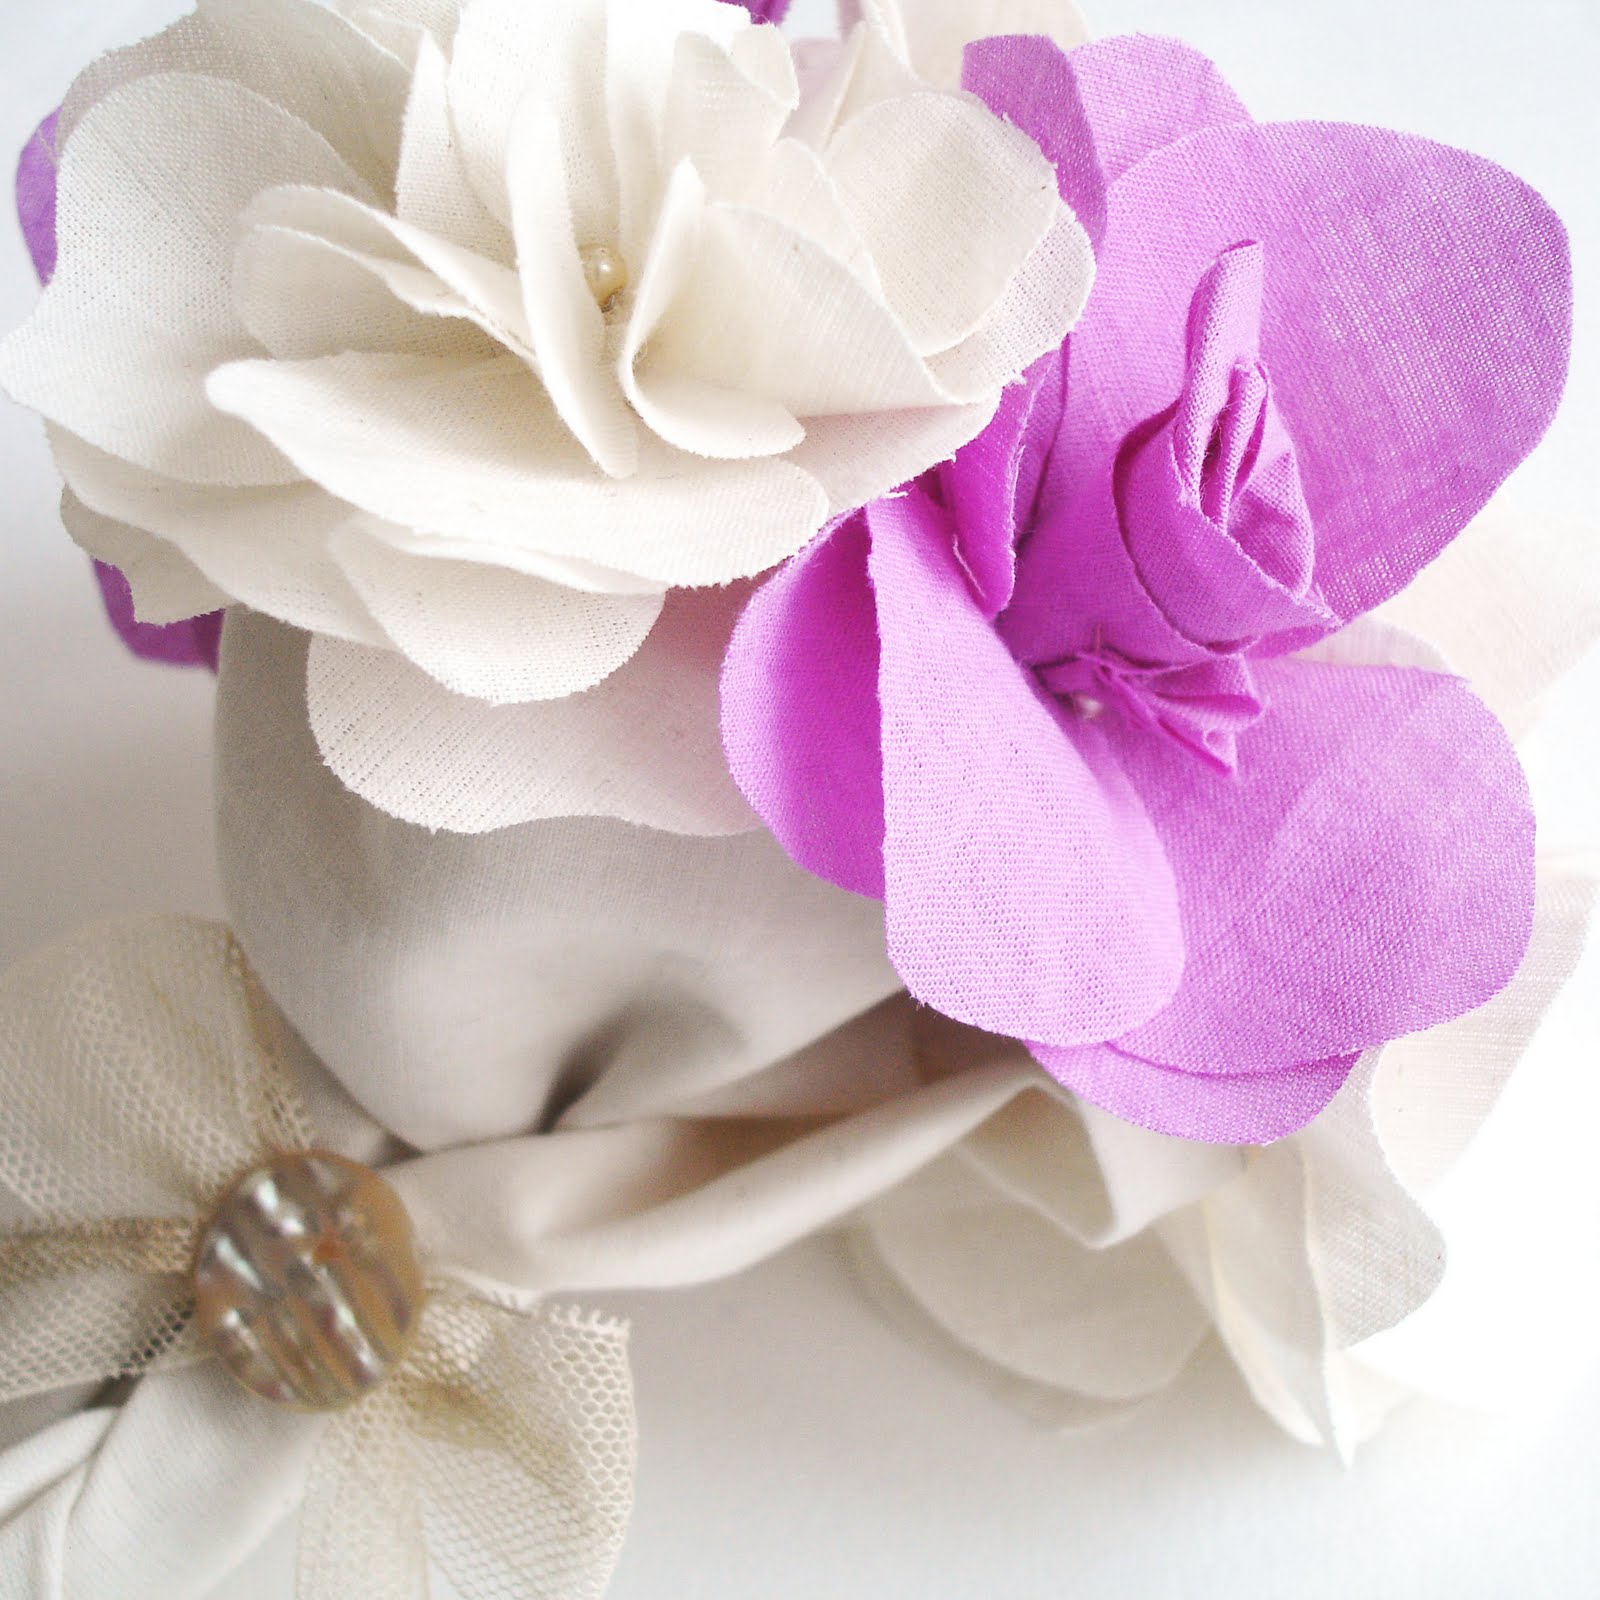 We Make London: Fabric Flower Mini-Bouquet Workshop Details: